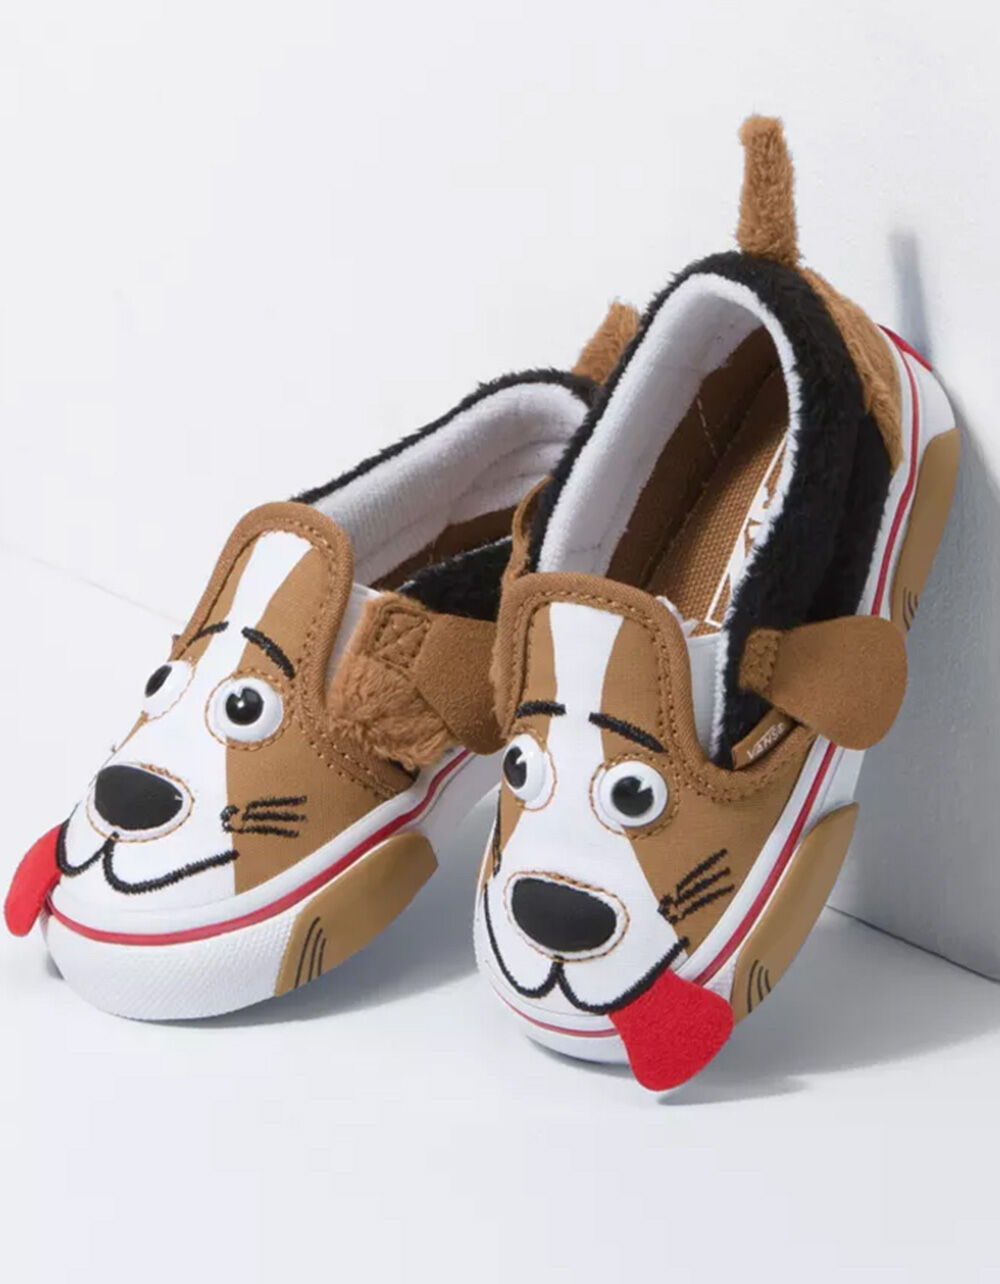 Arriba 97+ imagen vans puppy shoes